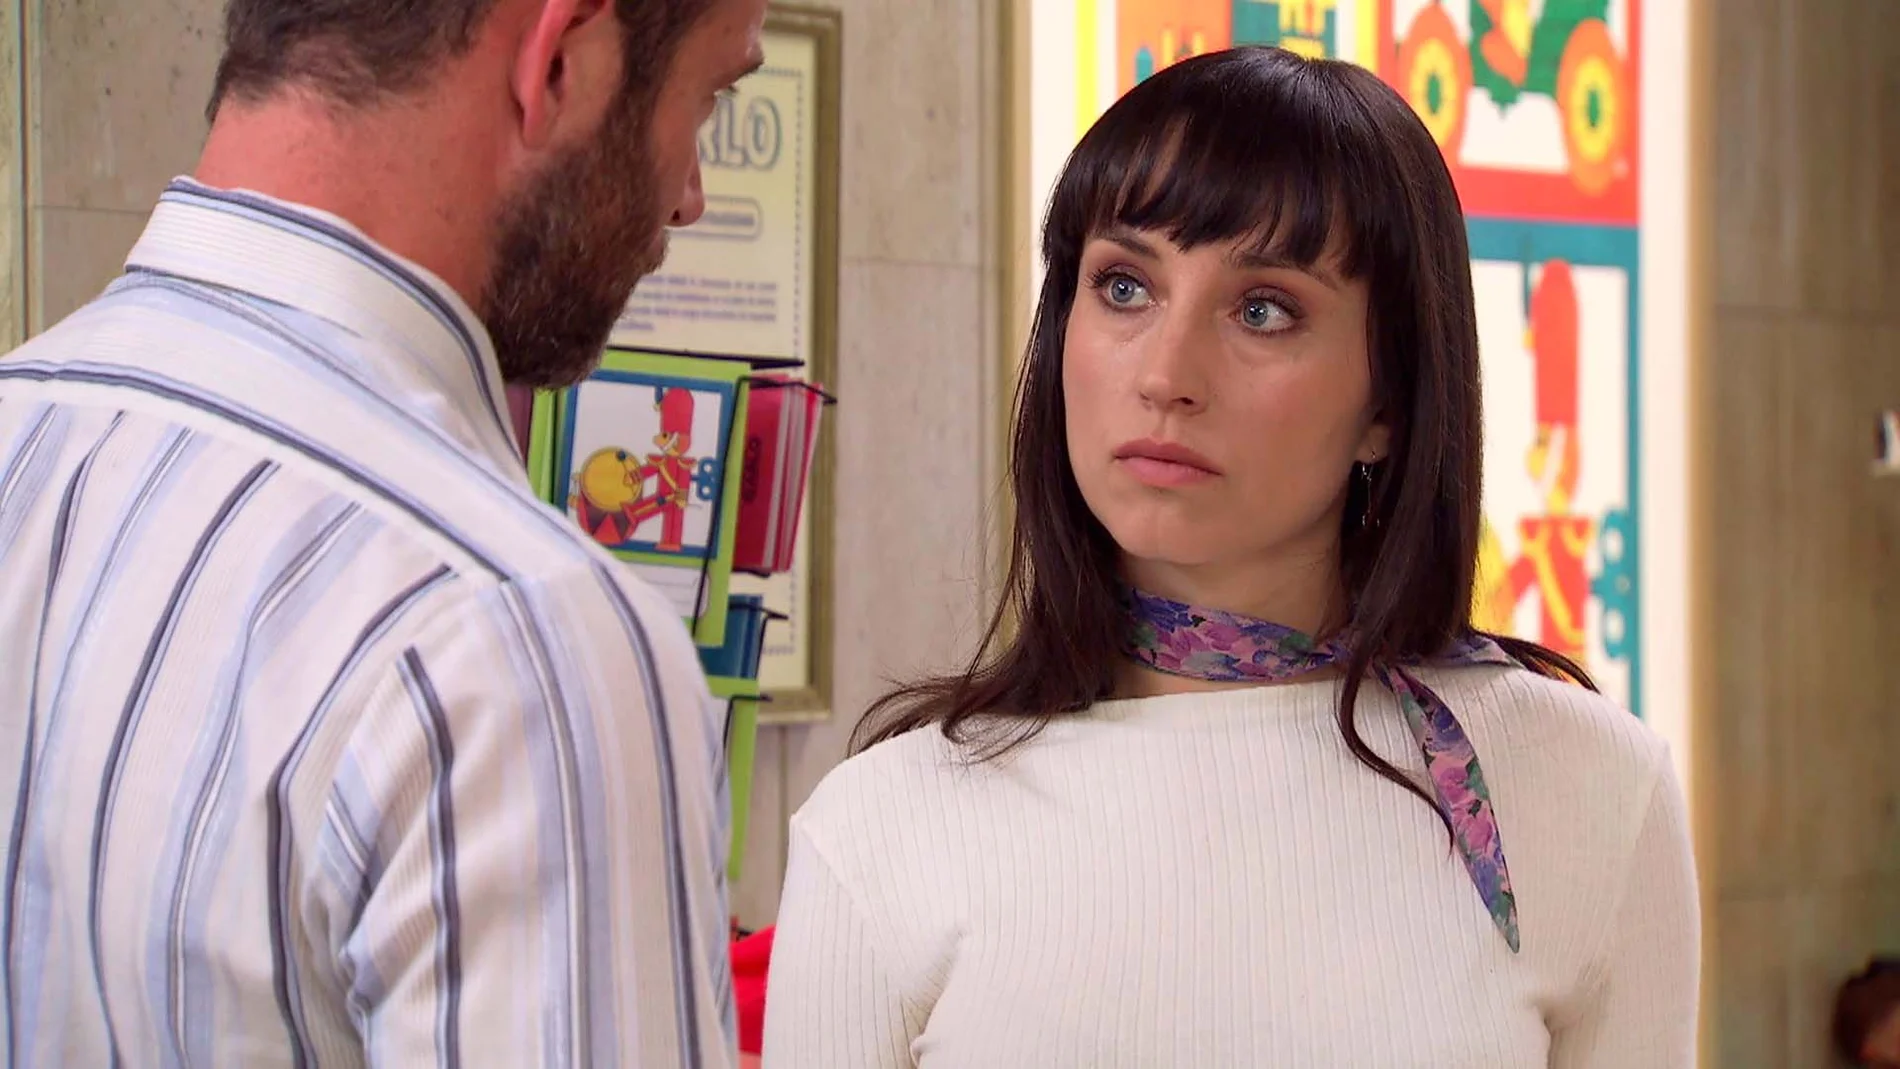 Paloma encara a Fran tras un ataque de celos: "Nuestra relación se ha estancado"